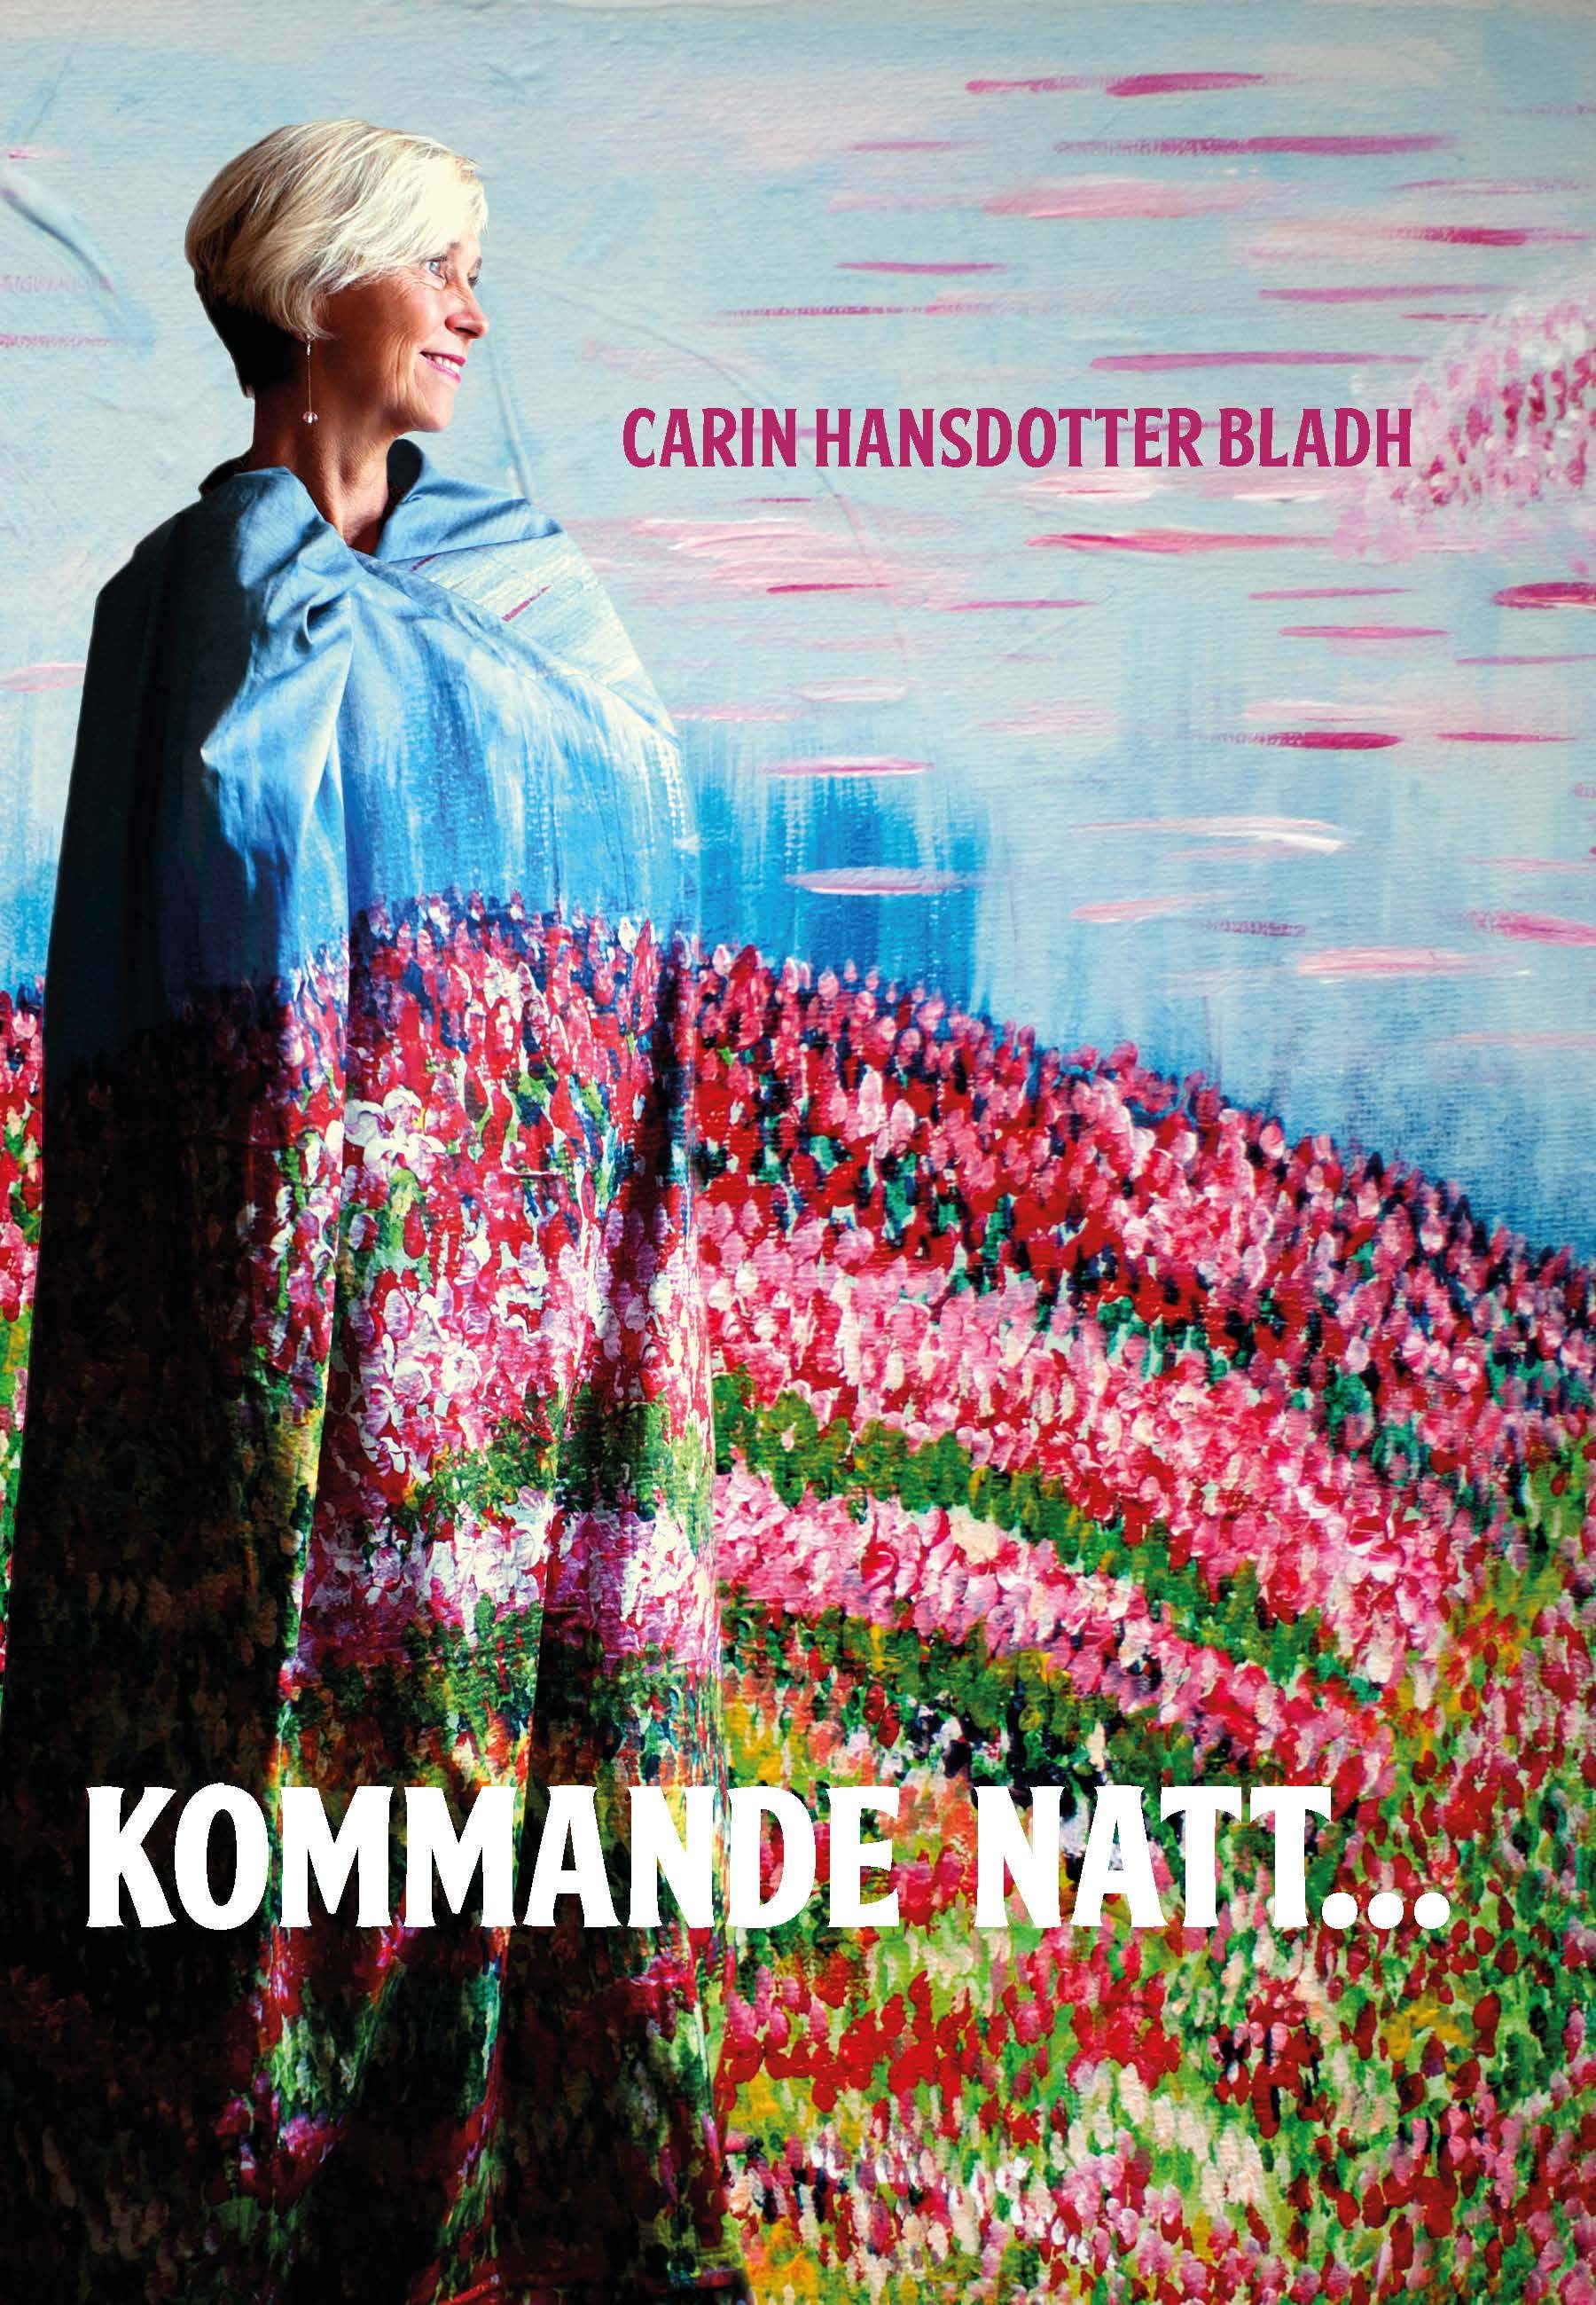 Kommande natt..., e-bok av Carin Hansdotter Bladh